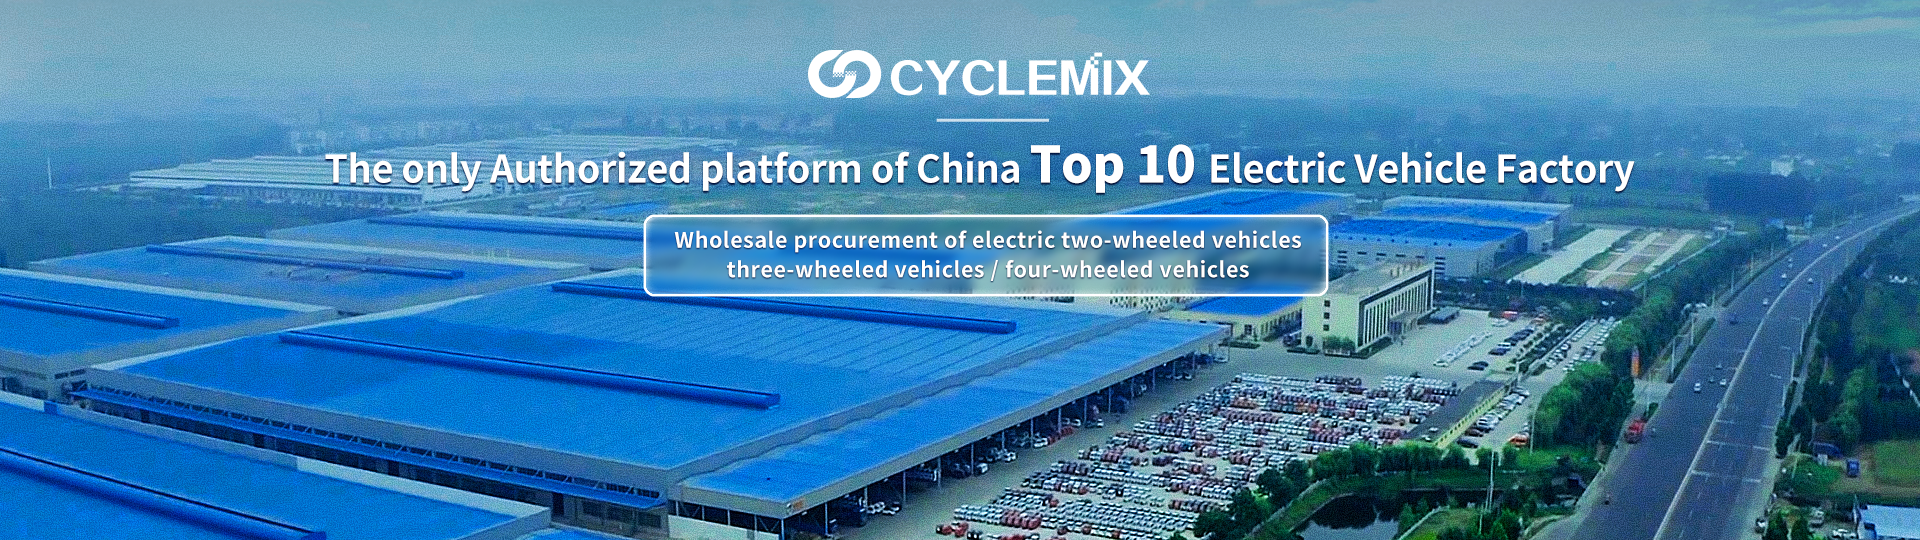 CYCLEMIX De enige geautoriseerde partij/platform van China Top 10 Electric Vehicle Factory